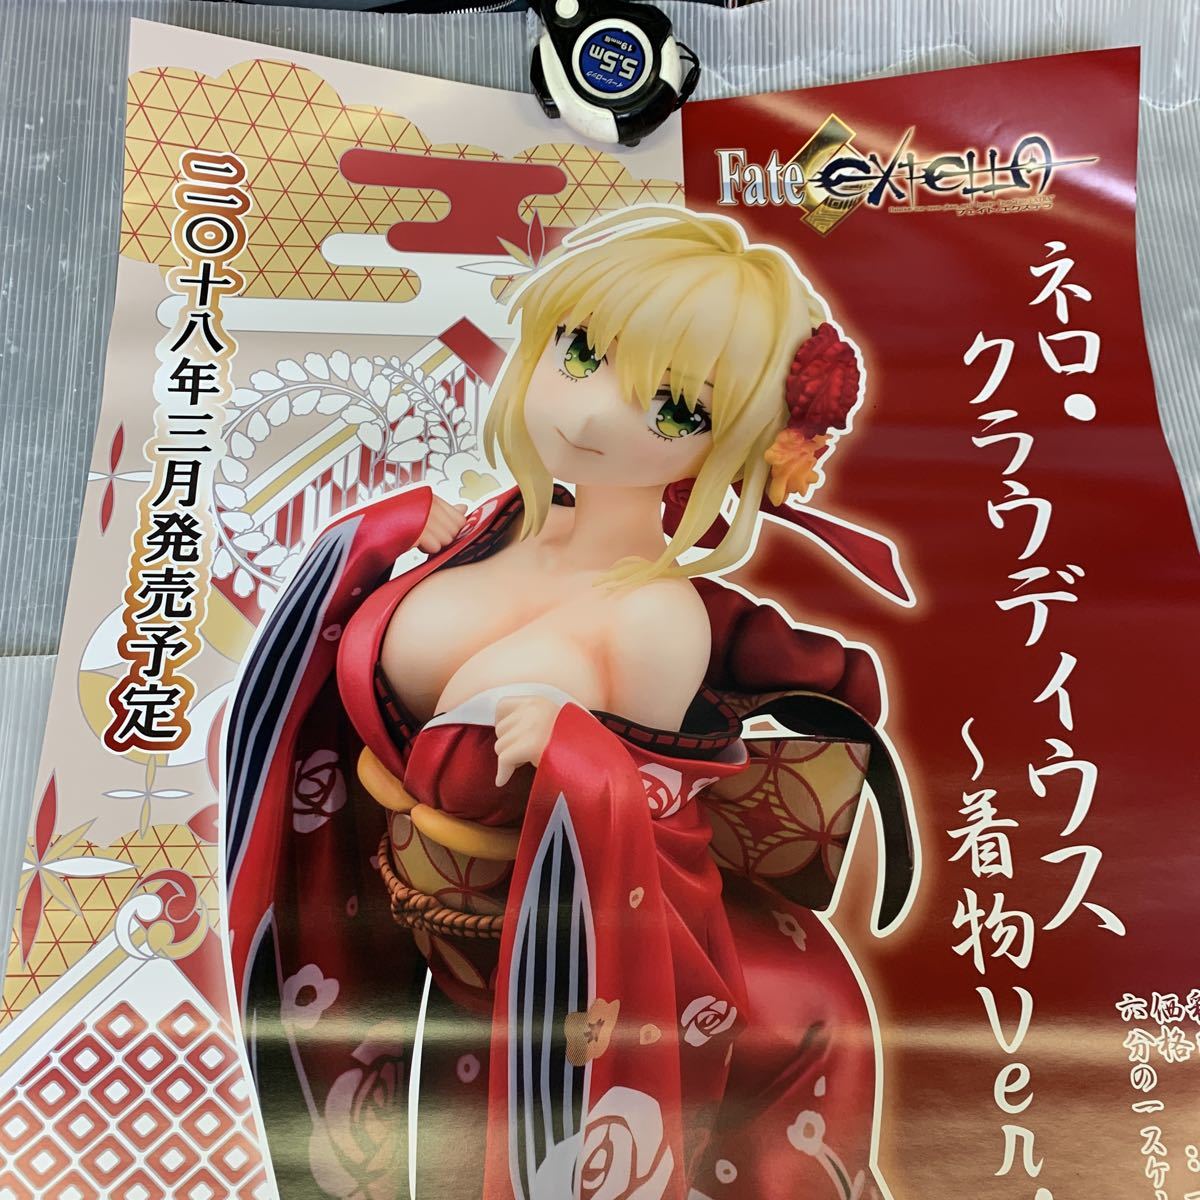 a972 Fate EXTELLA ネロ・クラウディウス 着物Ver. 1/6スケール フィギュア ポスター 販促 非売品